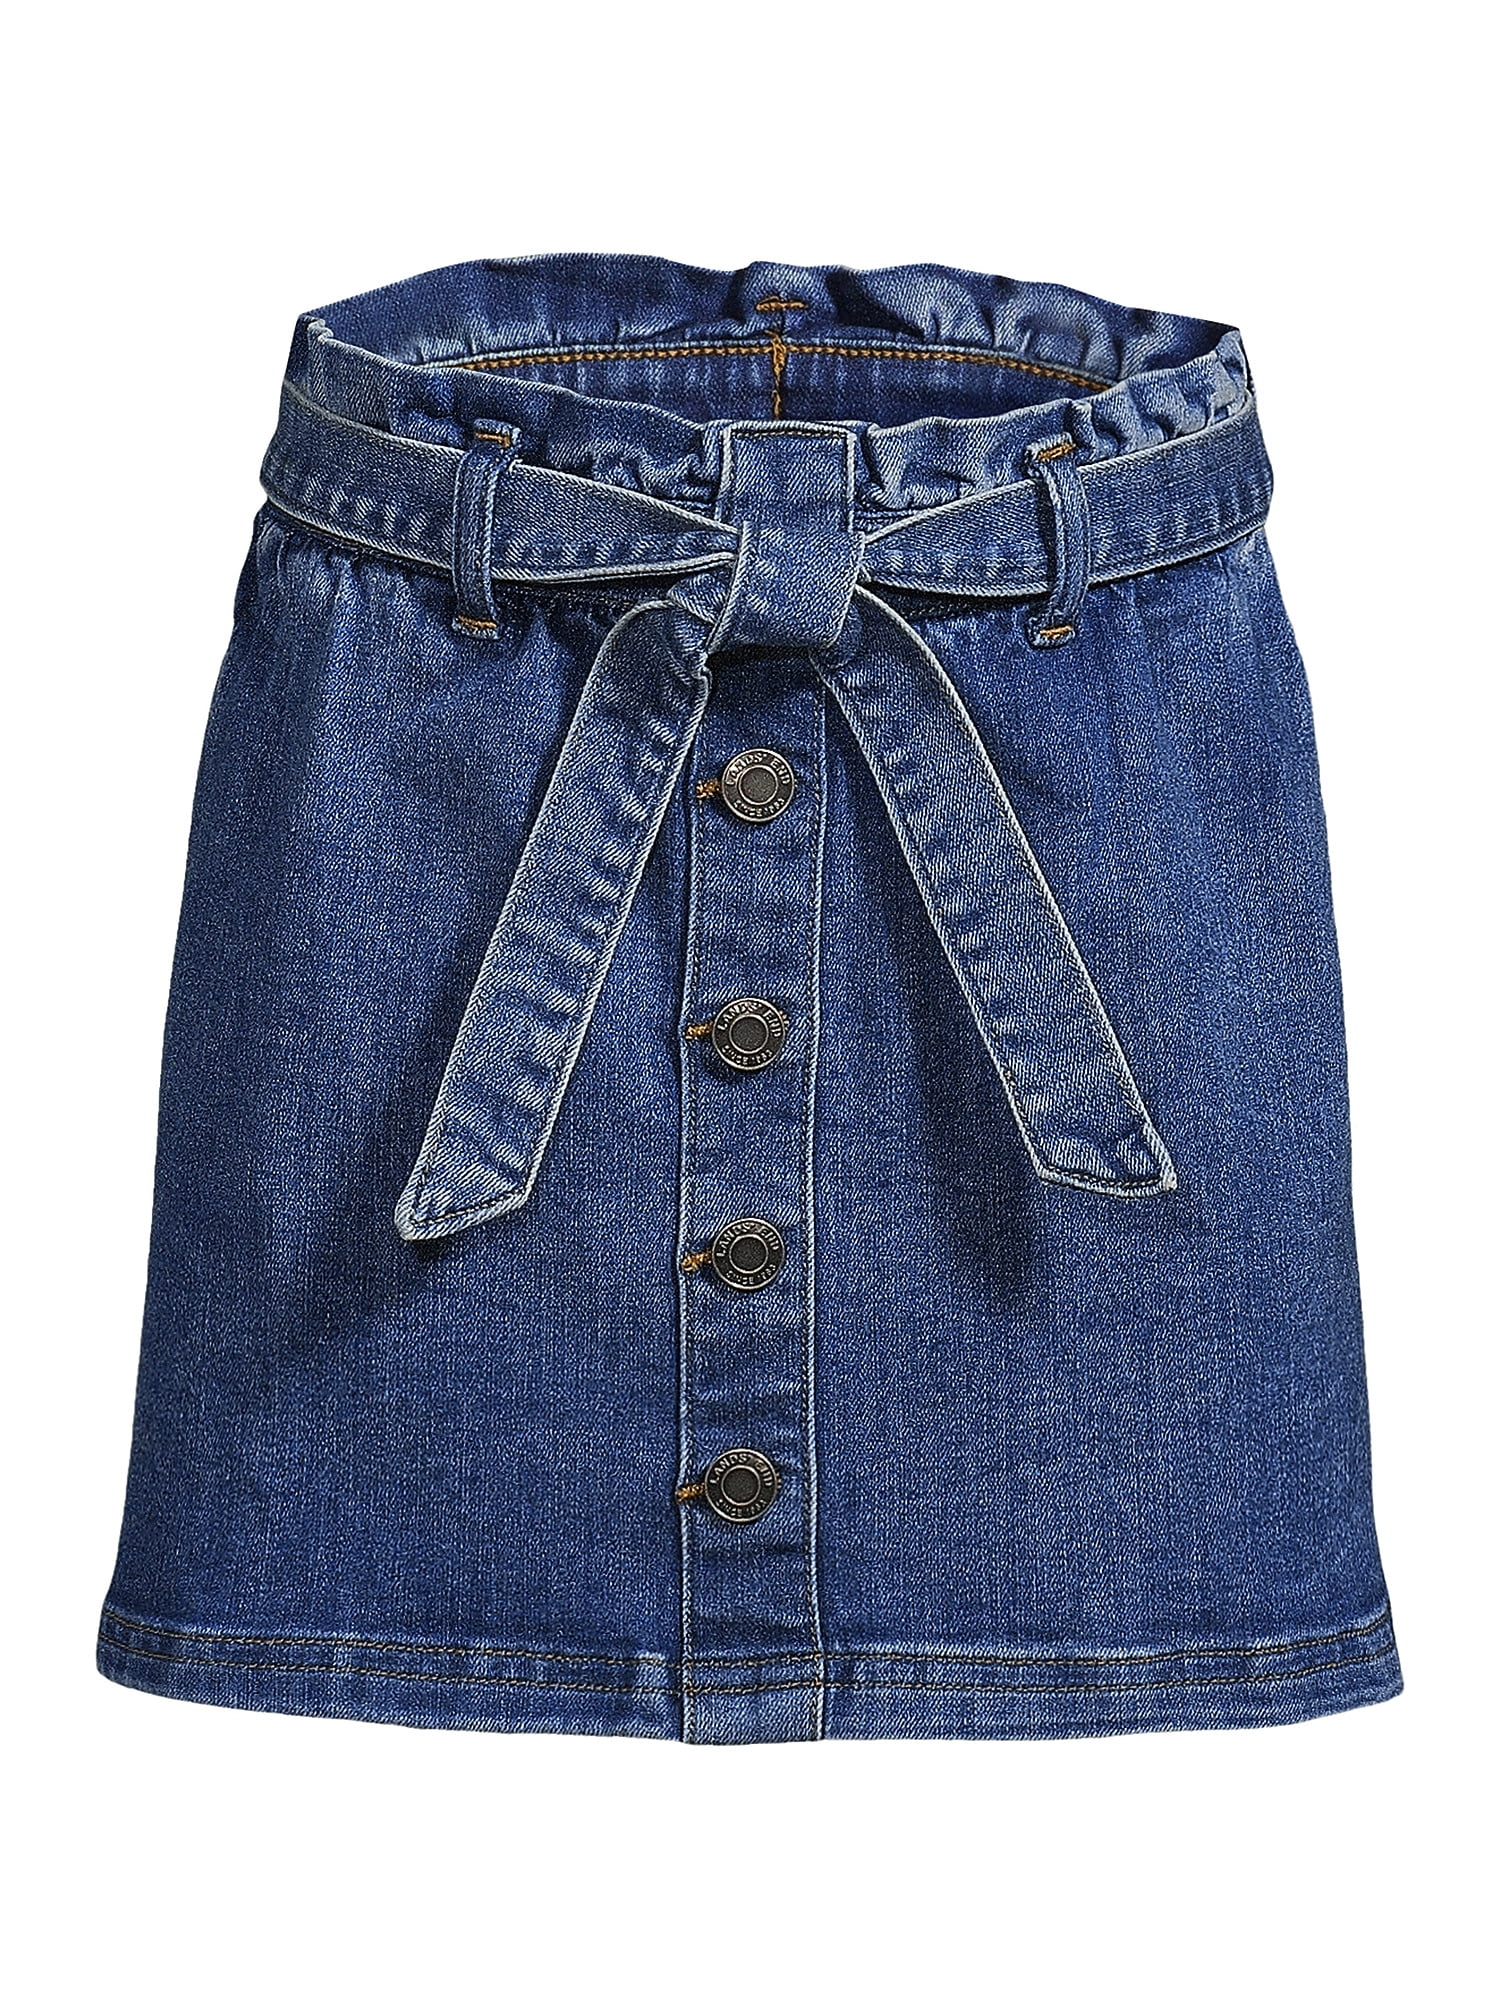 Lands' End Girls Paperbag Denim Skirt - Walmart.com